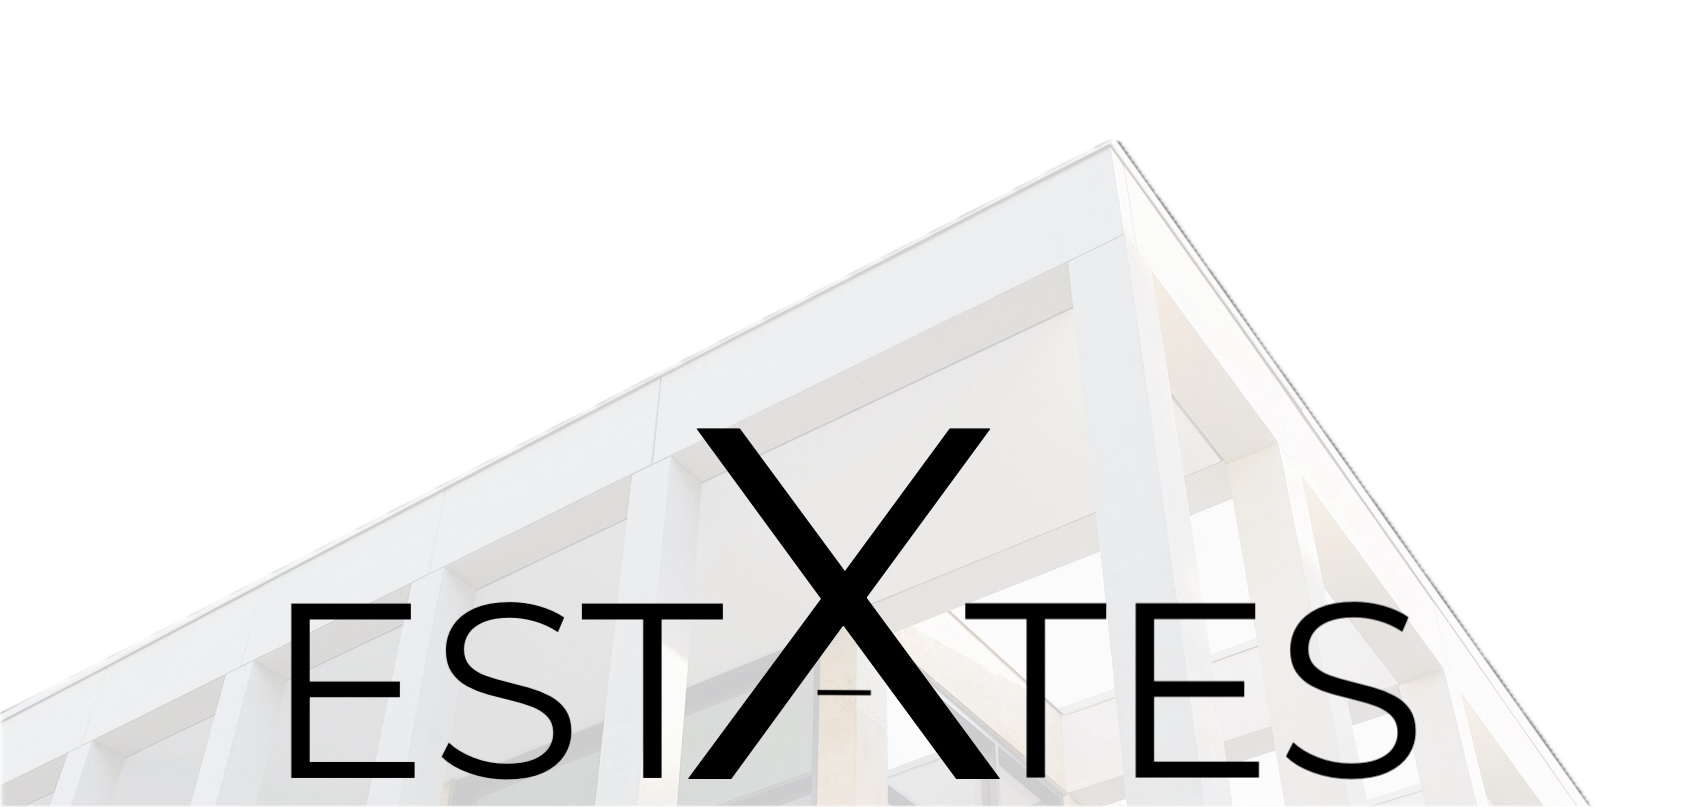 X-Estates